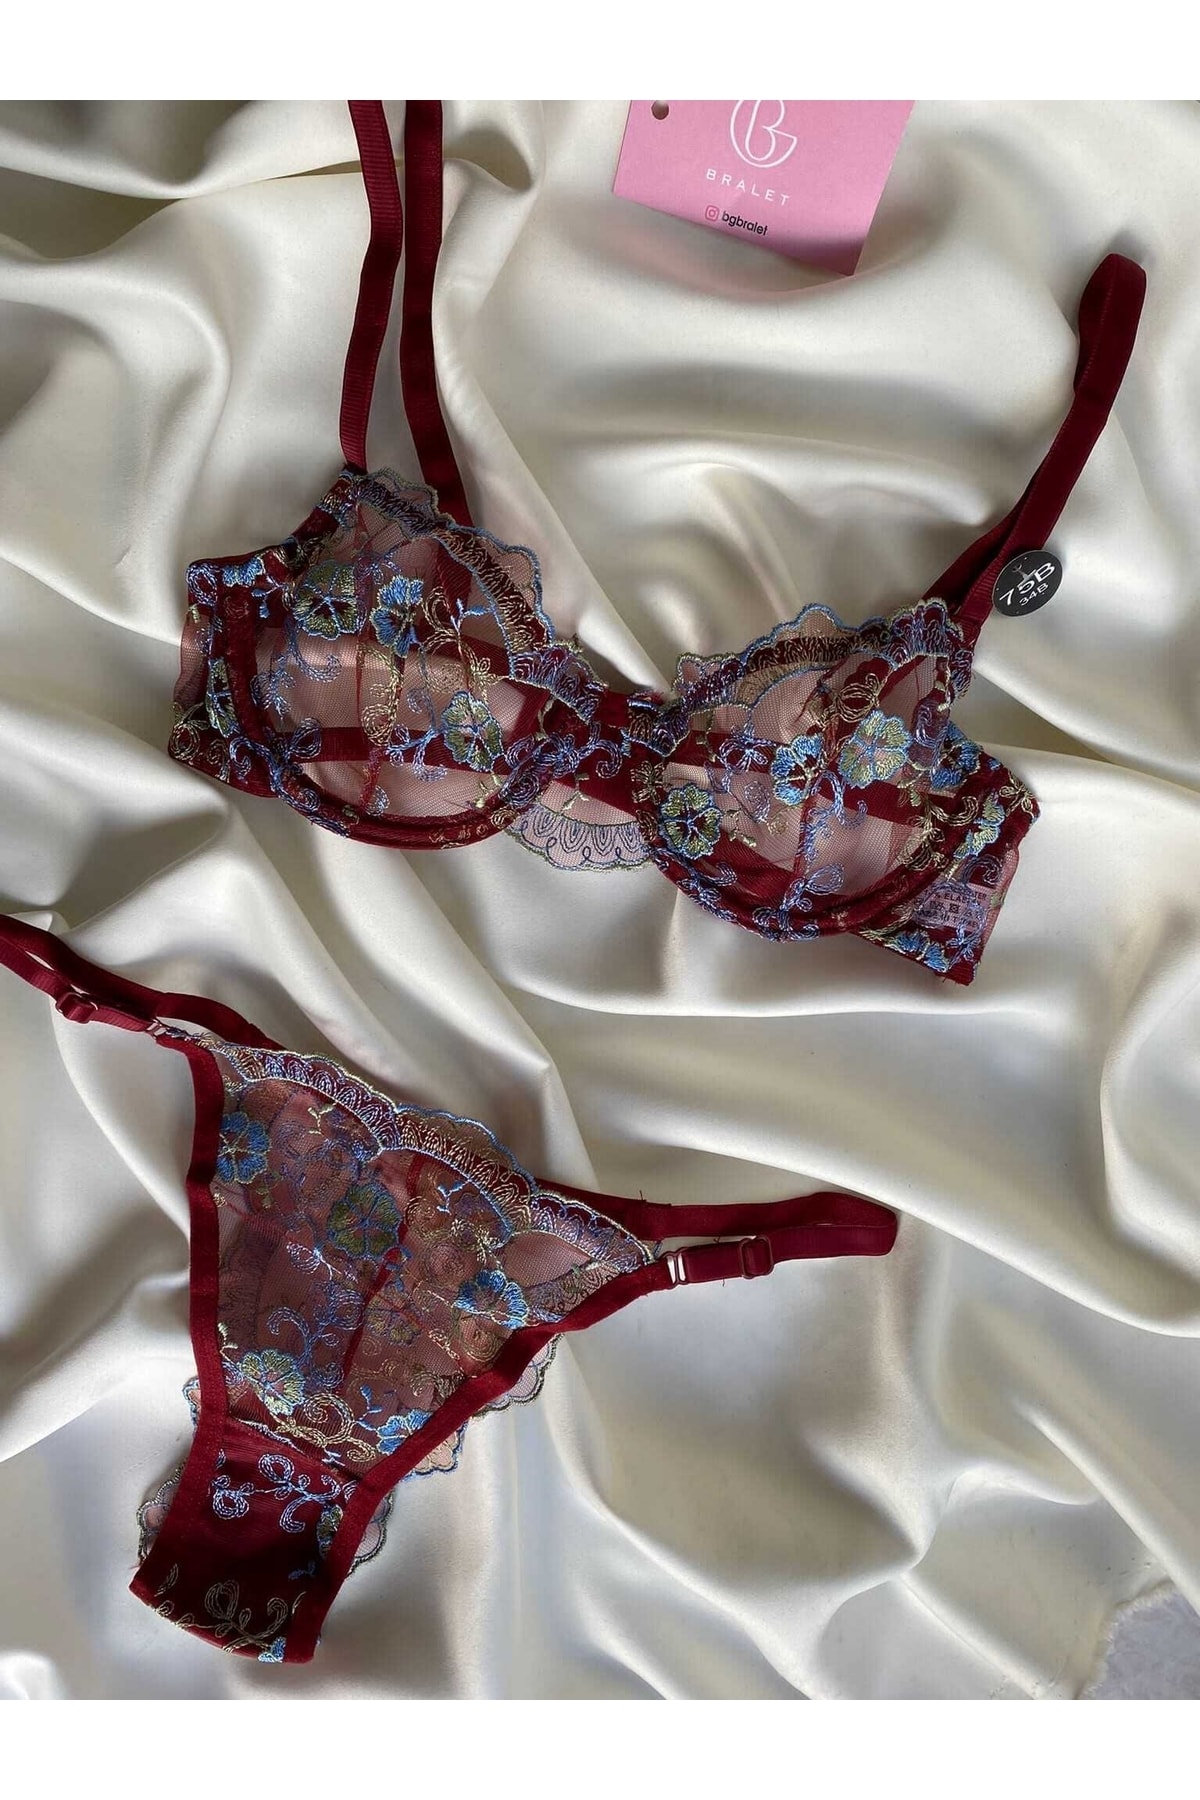 More&More Underwear Çiçek Desenli Işlemeli Balenli Tül Bralet Takım